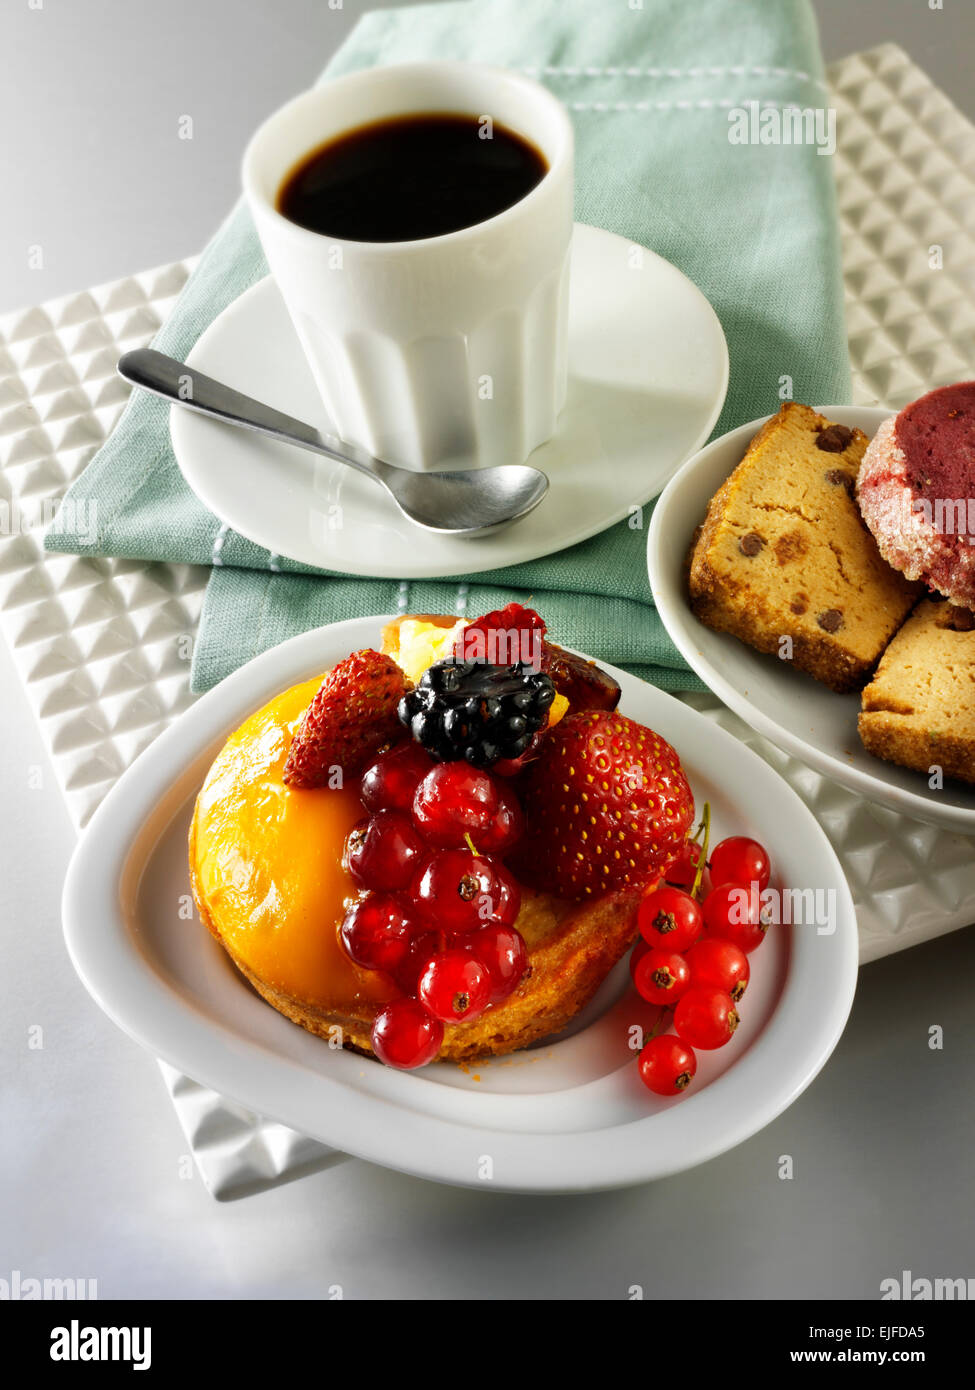 Pastel de frutas con grosellas, fresas silvestres, blackberry y crema de pastelería en un caso de esponja de luz en un café con la taza de café Foto de stock